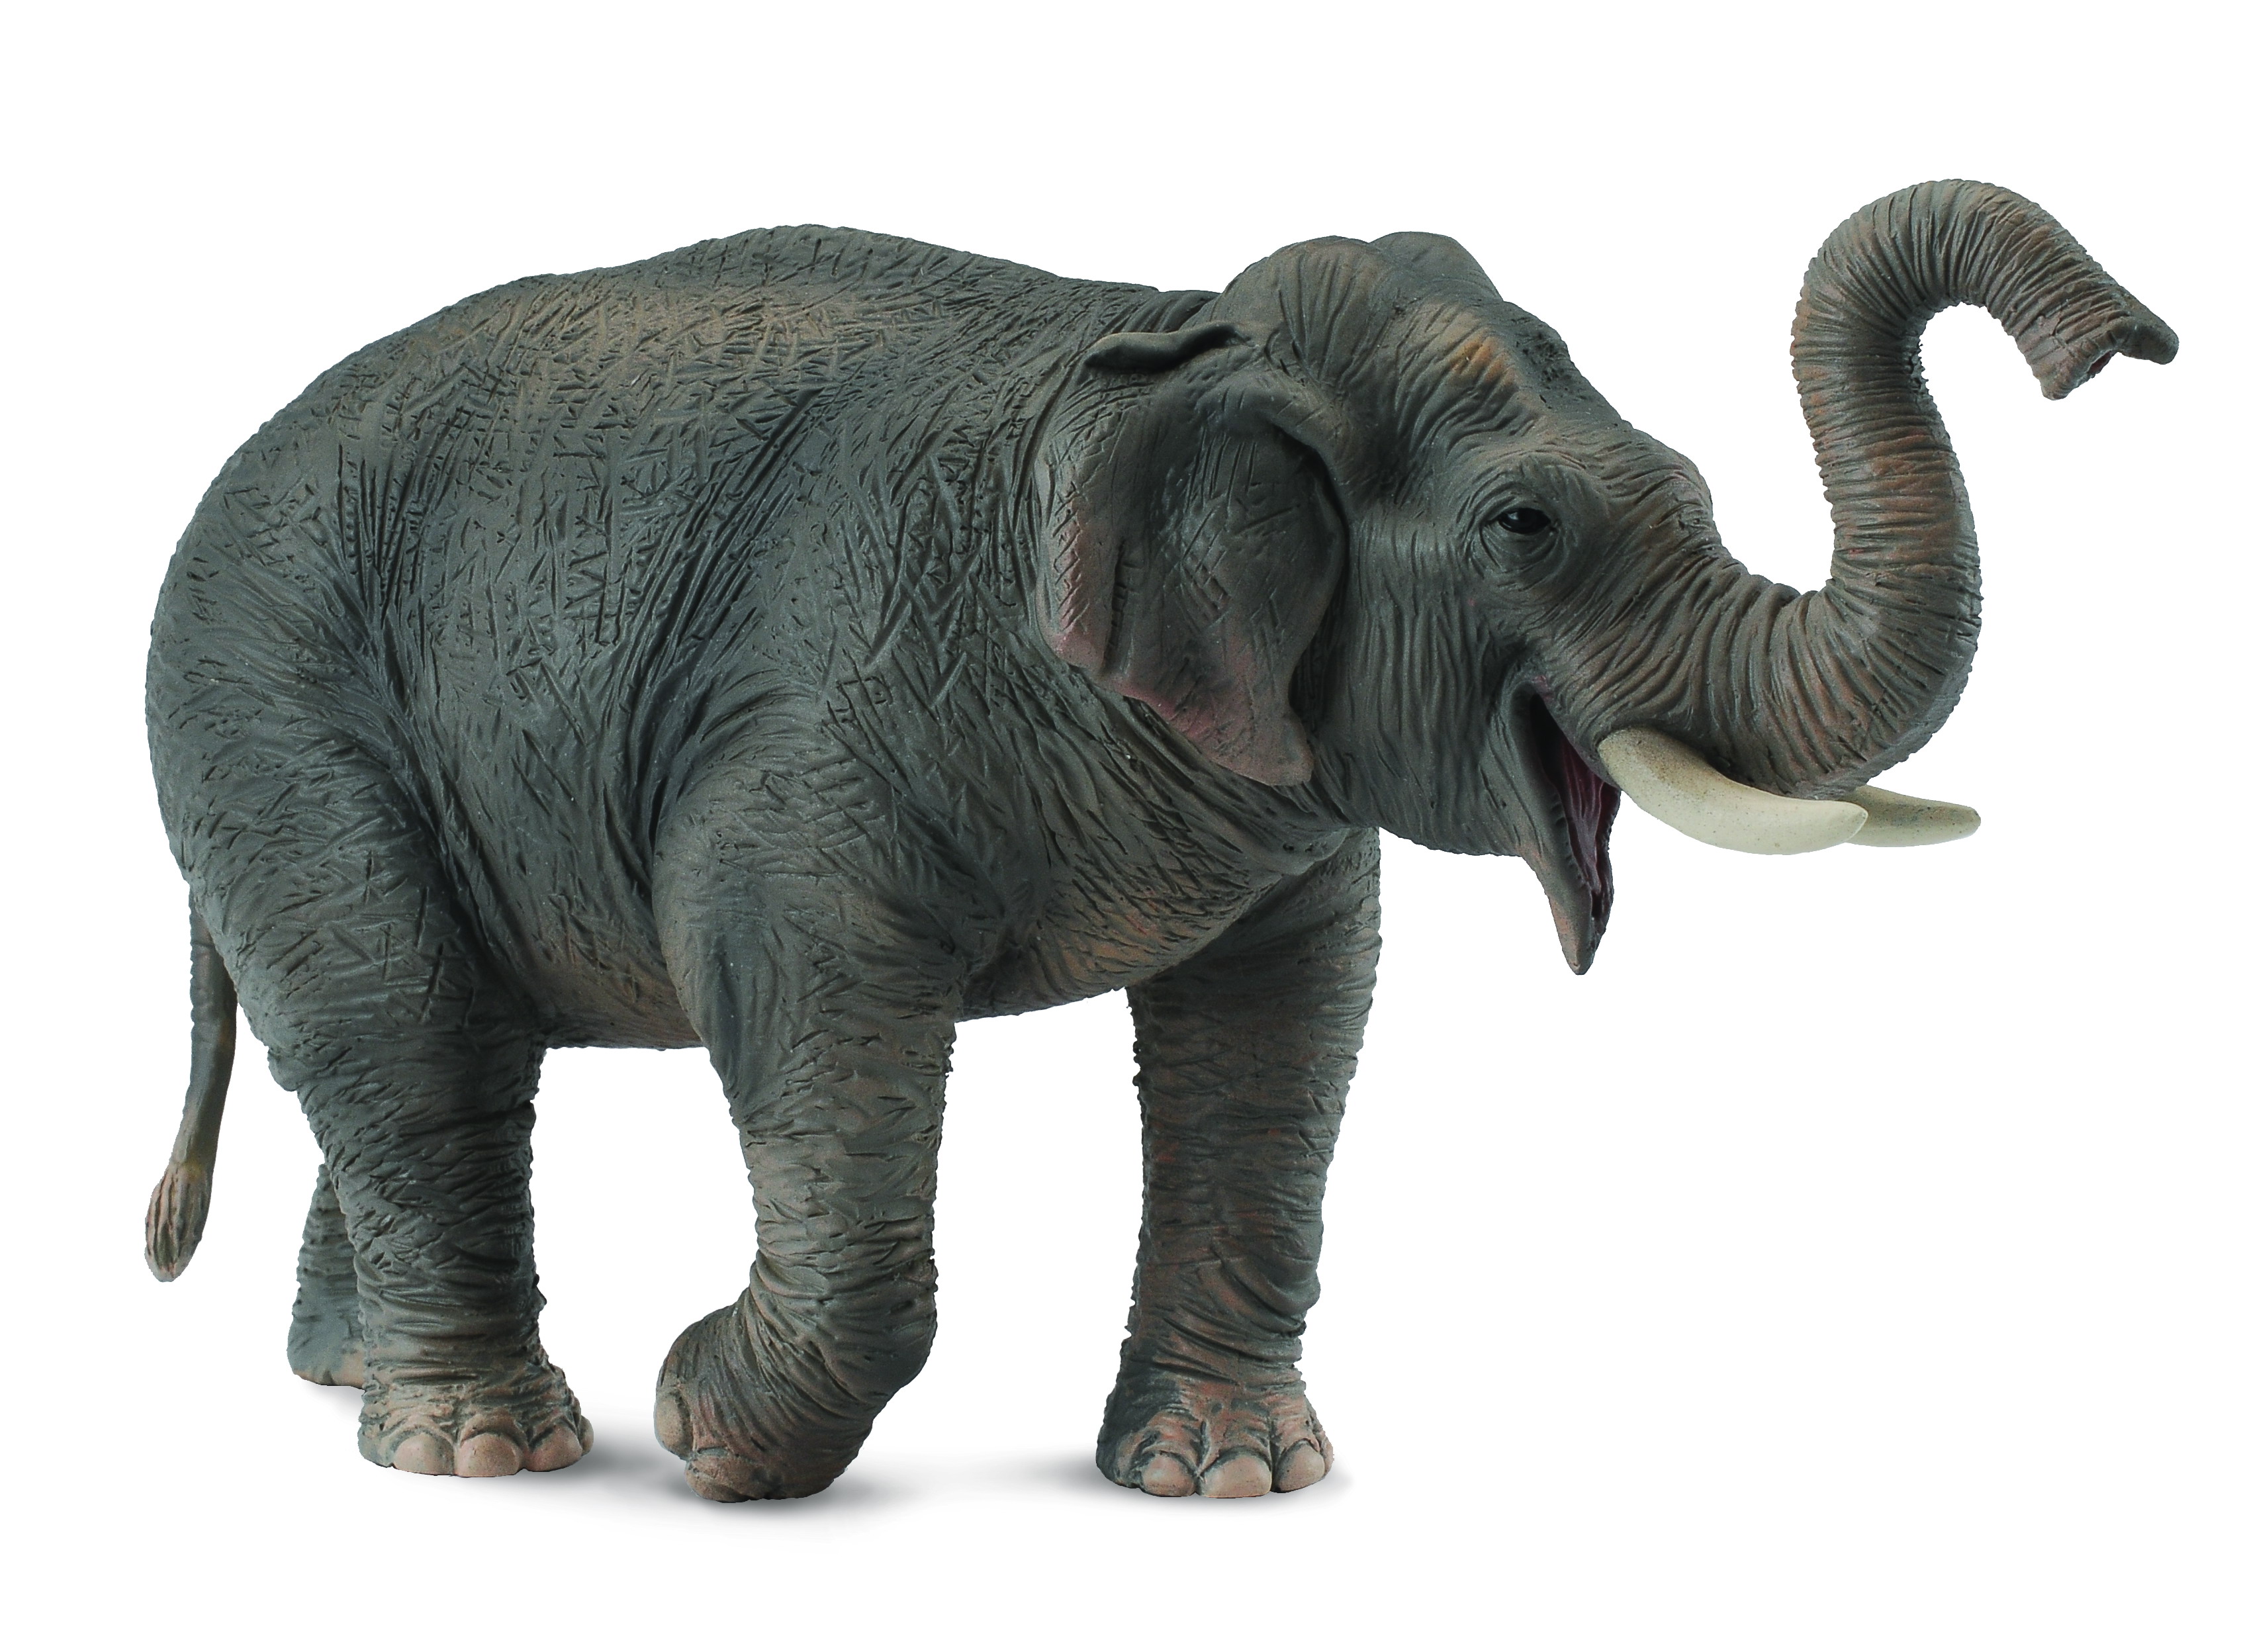 NUOVO CollectA Elefante Asiatico plastica solida giocattolo Wild Zoo Animale 